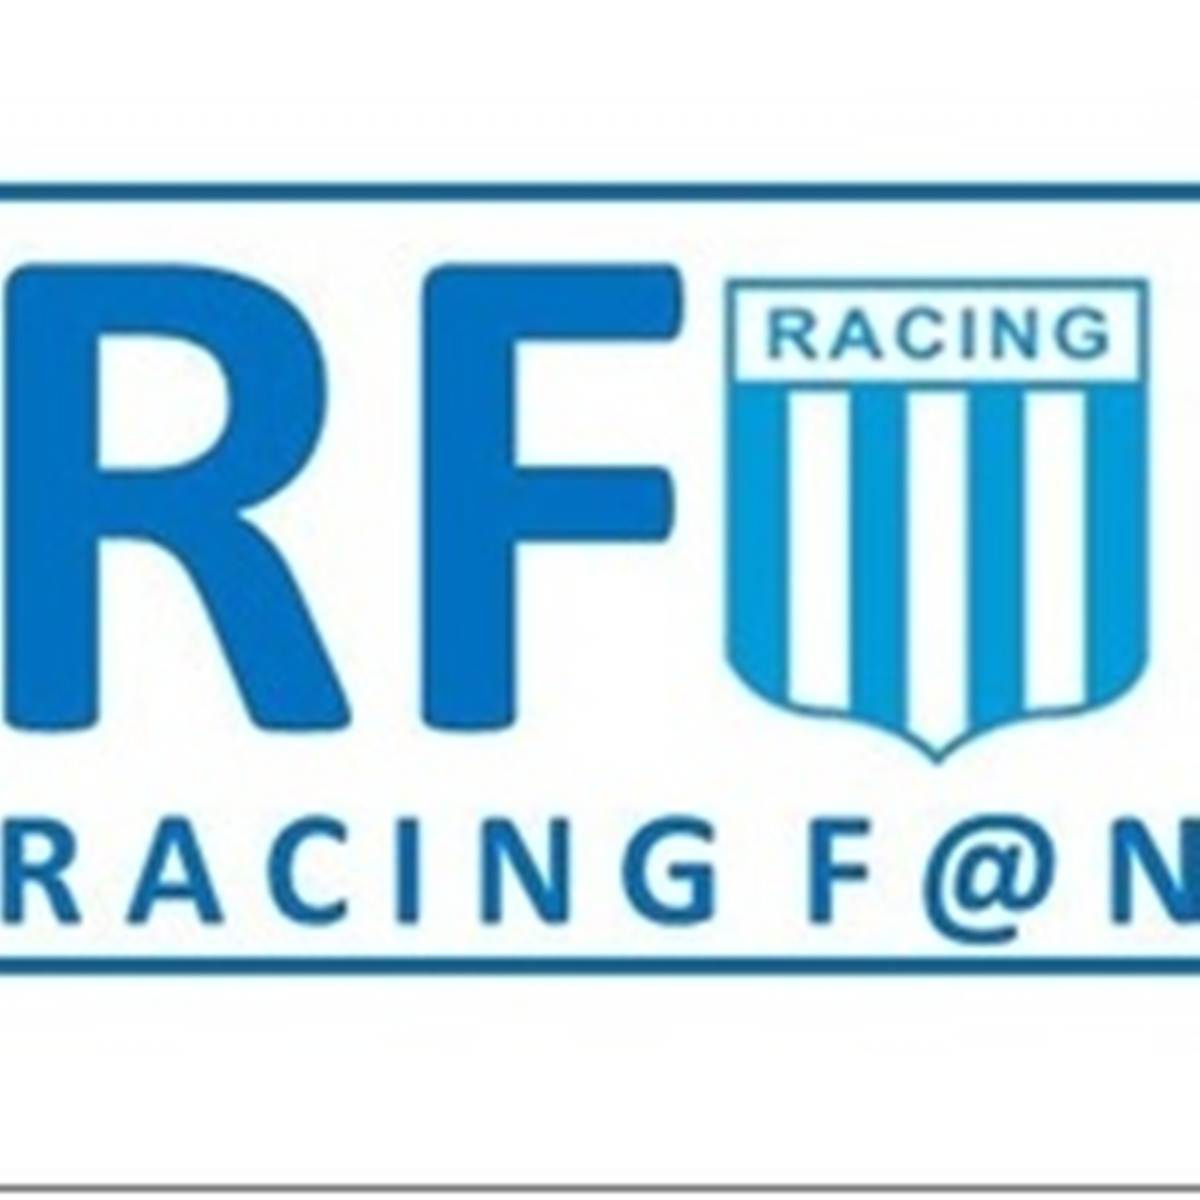 #Podcast Racing Fan | 02.06: Daniel Amoroso, de la Agrupación @RacingPuedeMas y @MarisaAndino